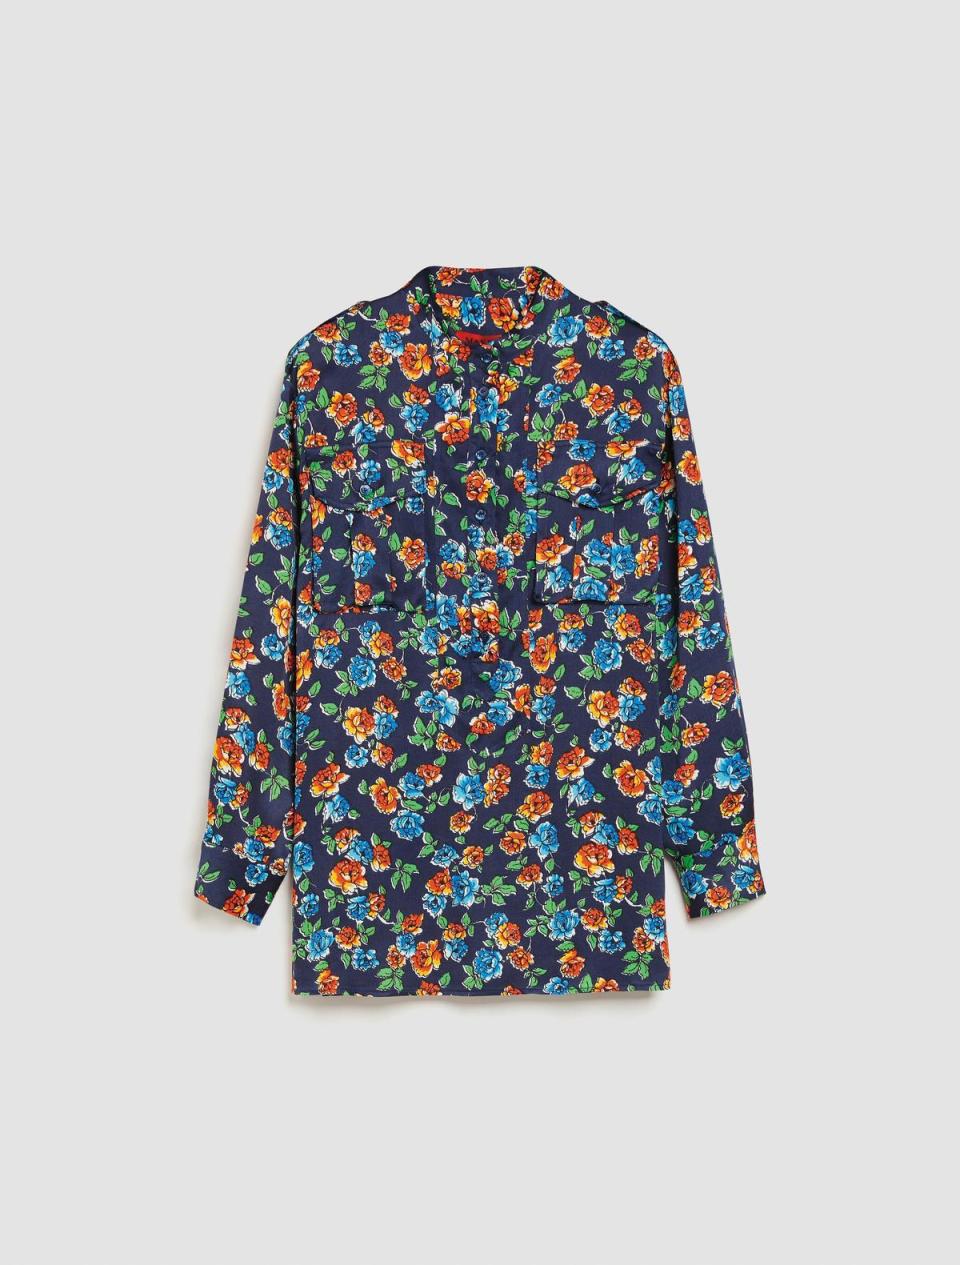 西里玫瑰寬版工裝襯衫 NT$14,600 （Max & Co.提供） 